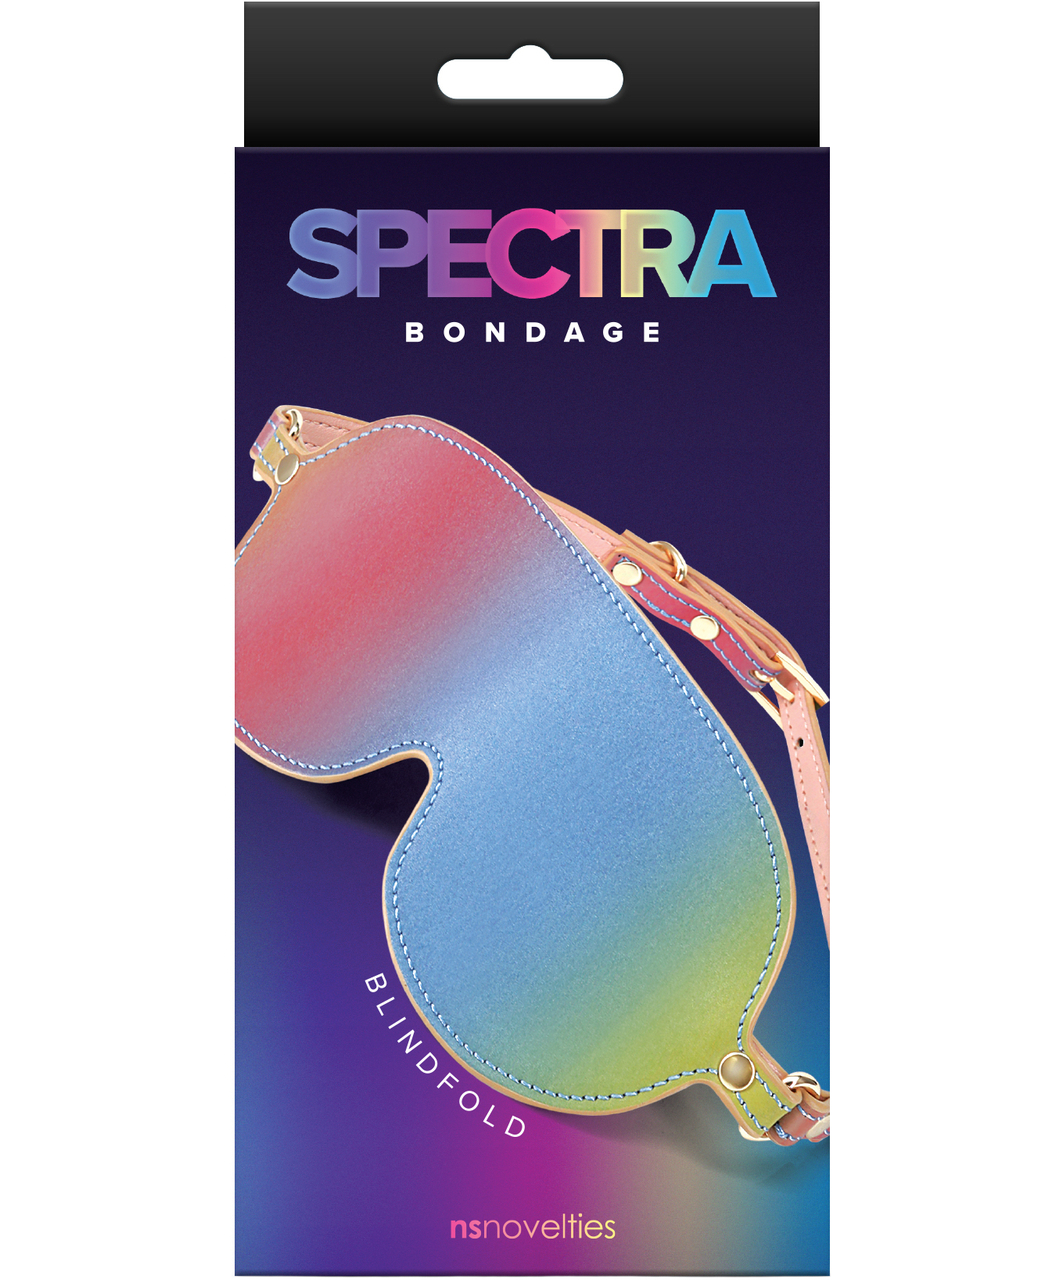 NS Novelties Spectra Bondage blindfold